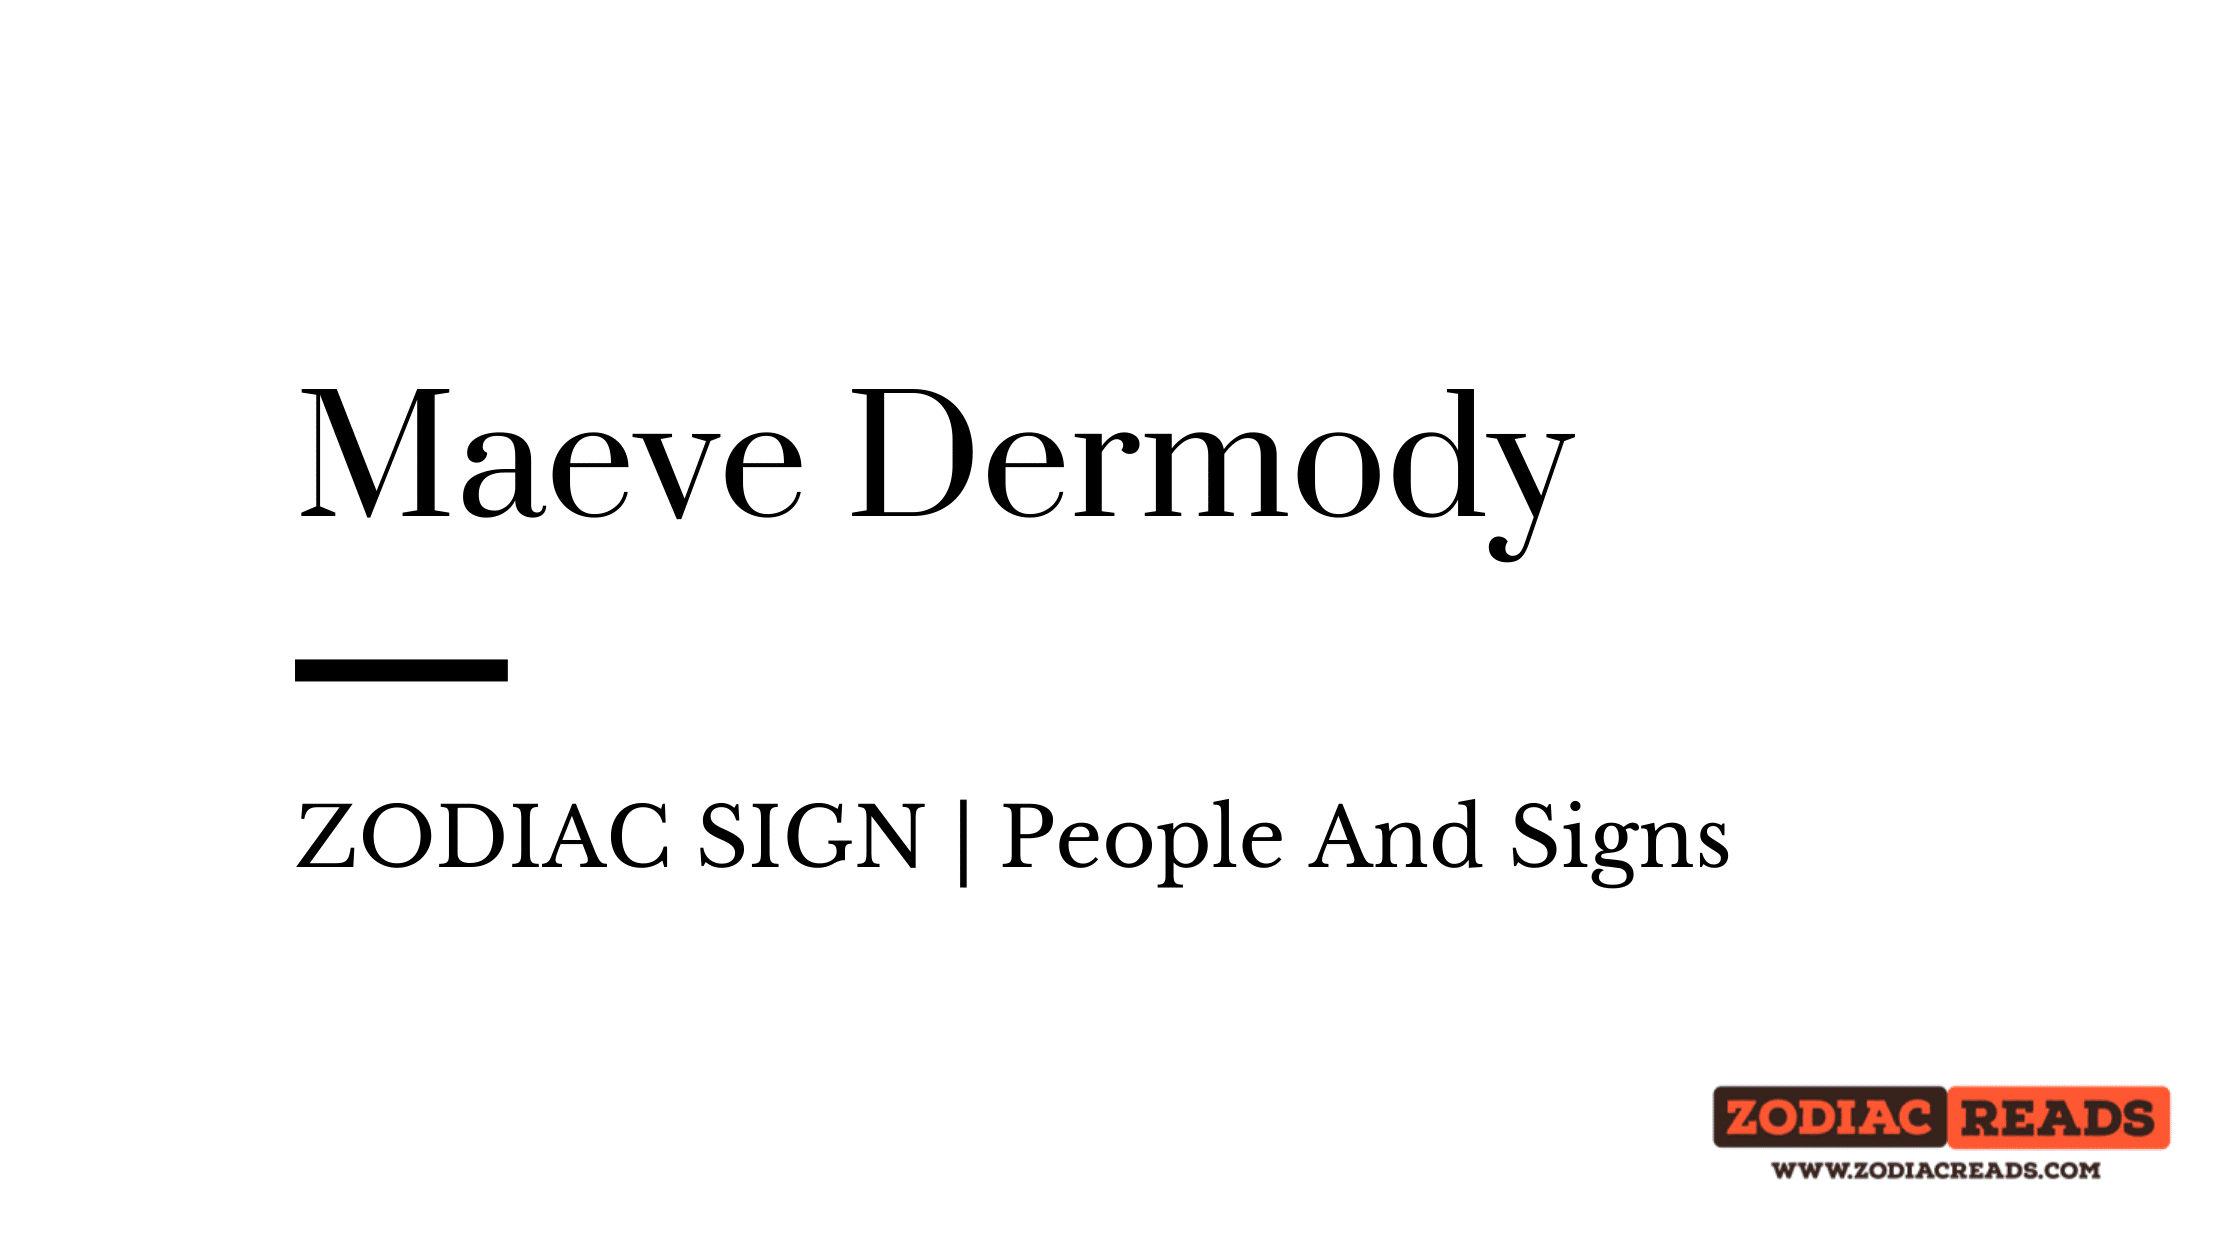 Maeve Dermody zodiac